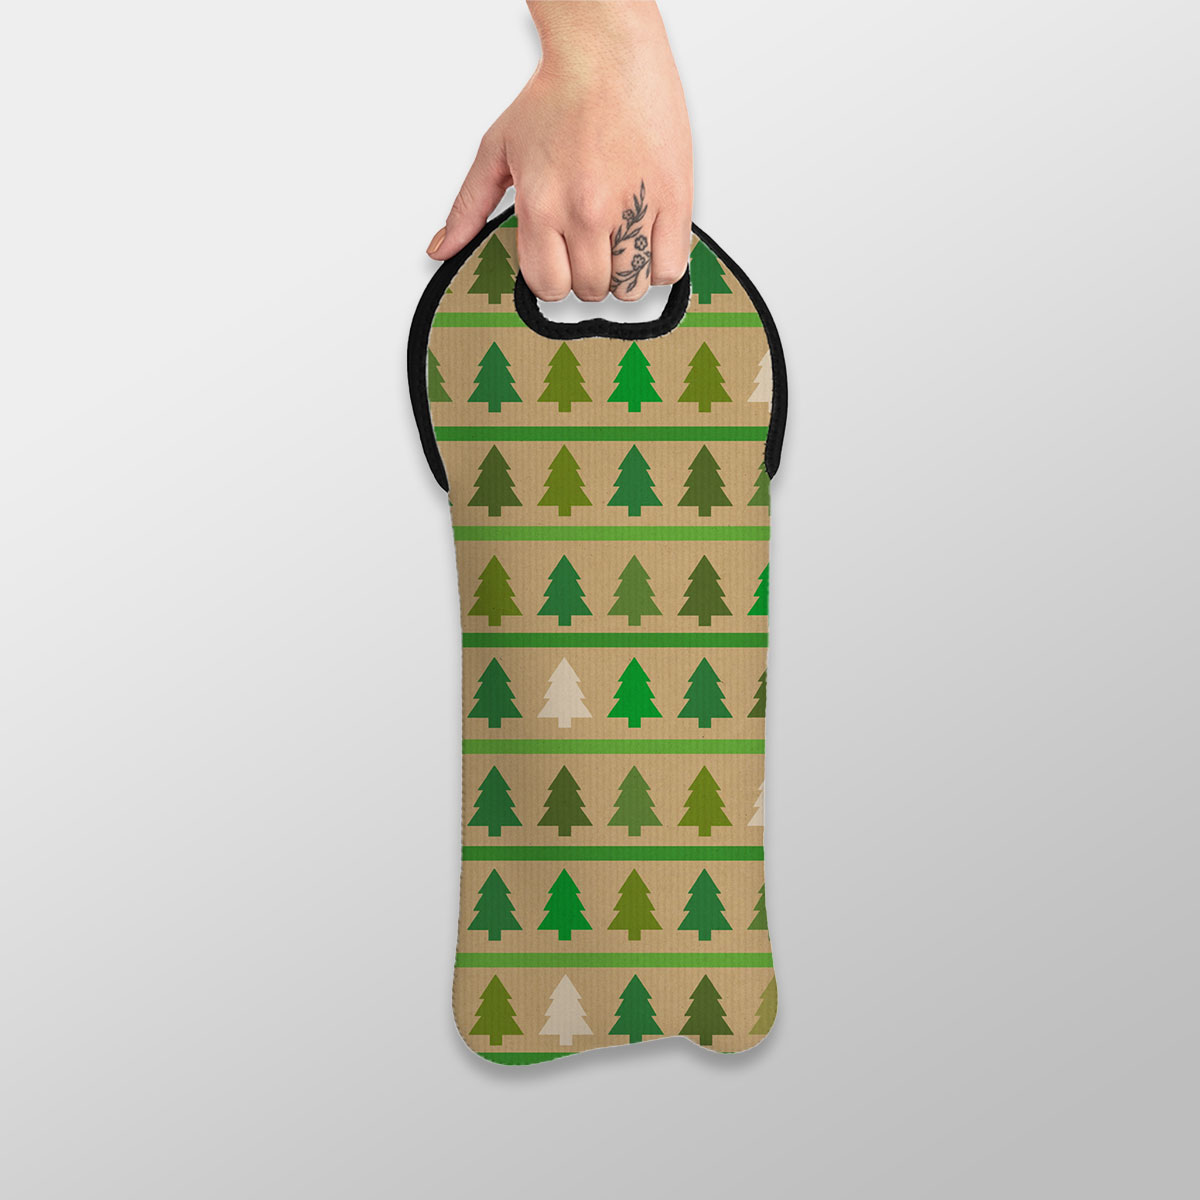 Christmas Tree, Pine Tree, Pine Tree Drawing Wine Tote Bag